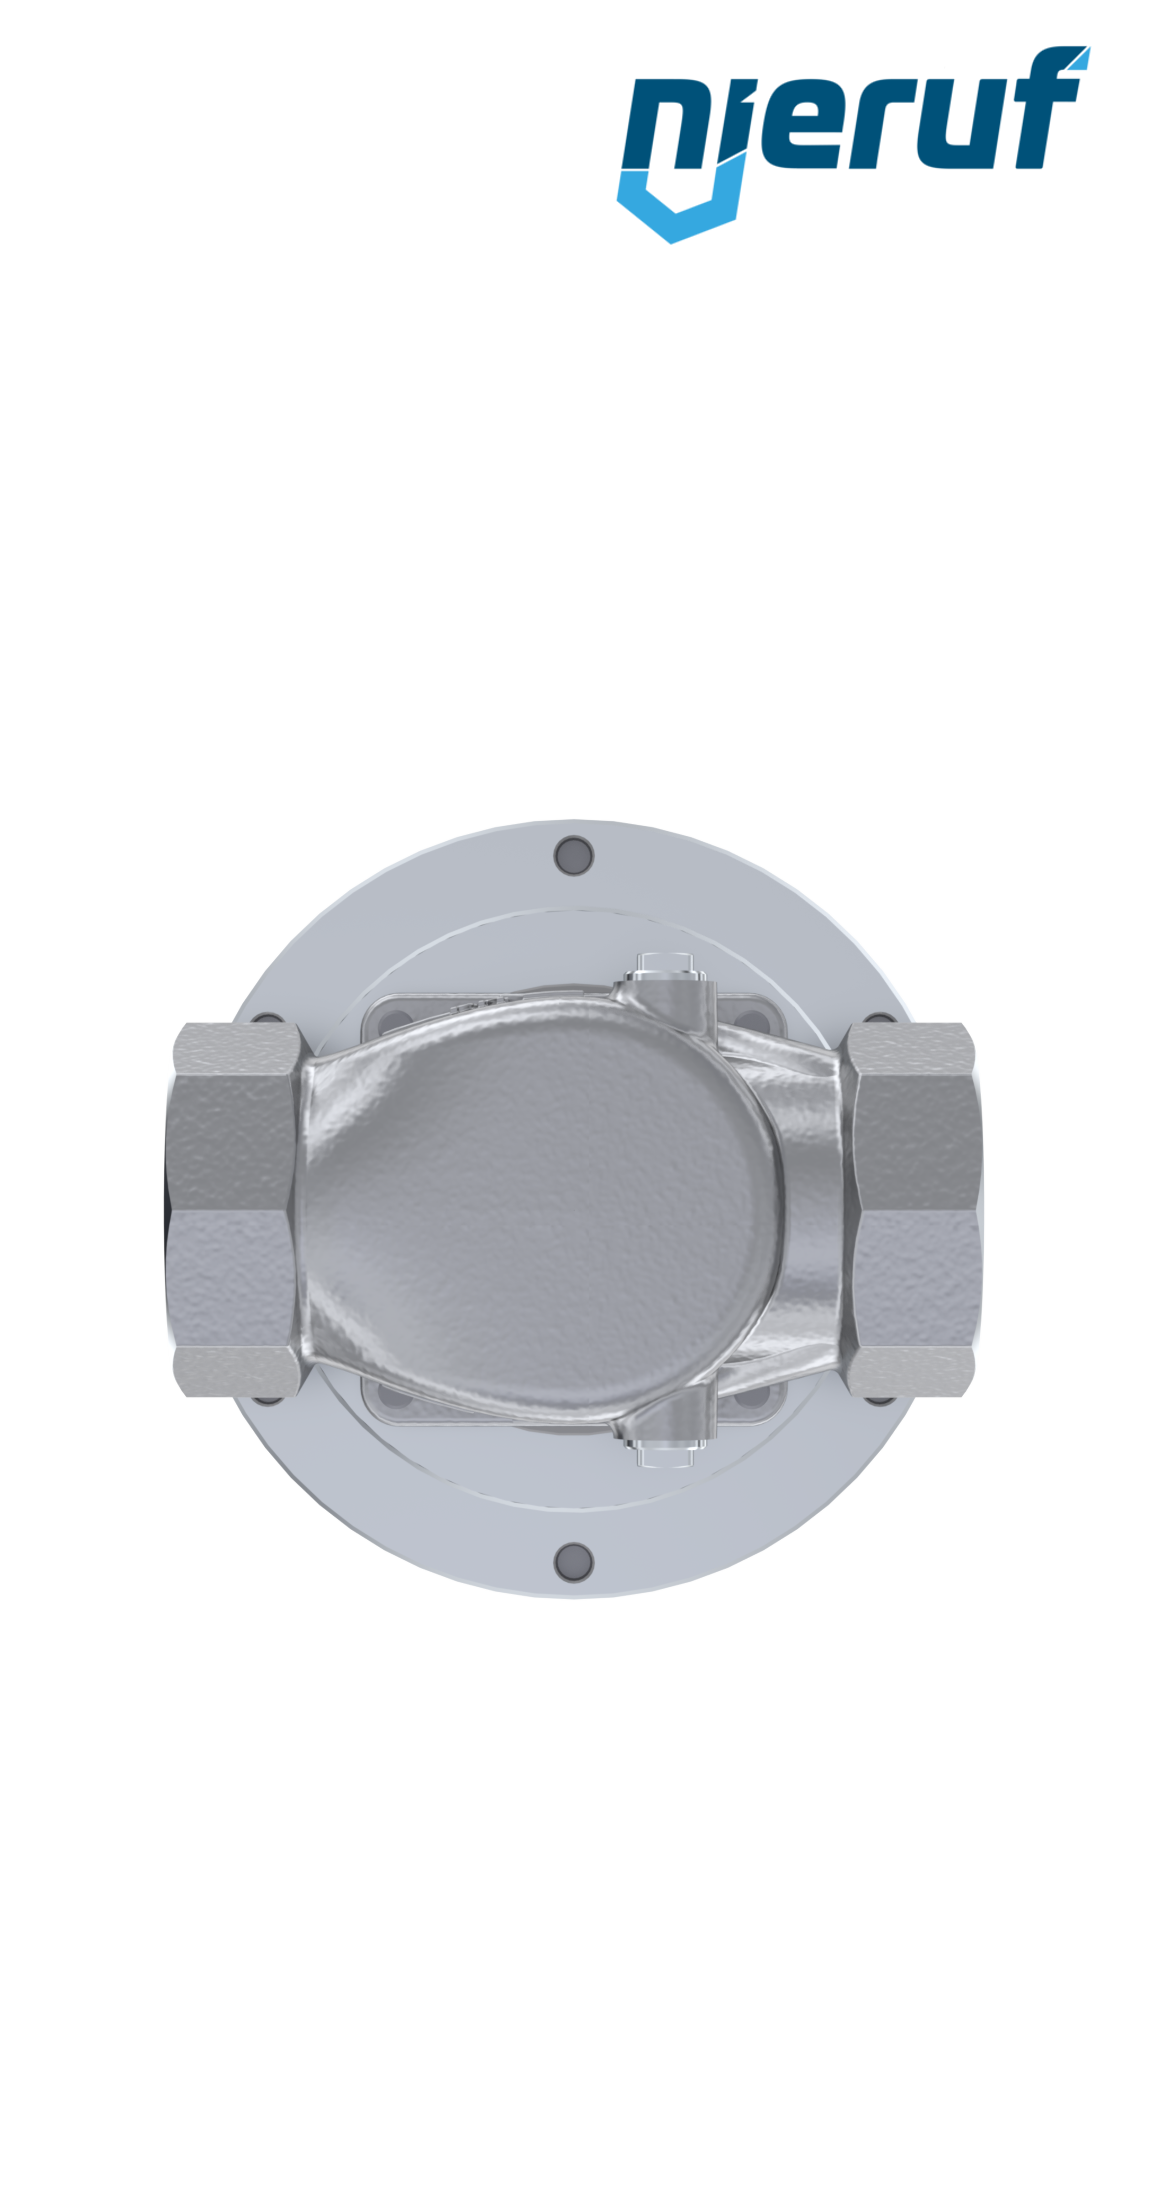 pressure reducing valve 2" Inch DM12 stainless steel FPM / FKM 0.2 - 2.0 bar